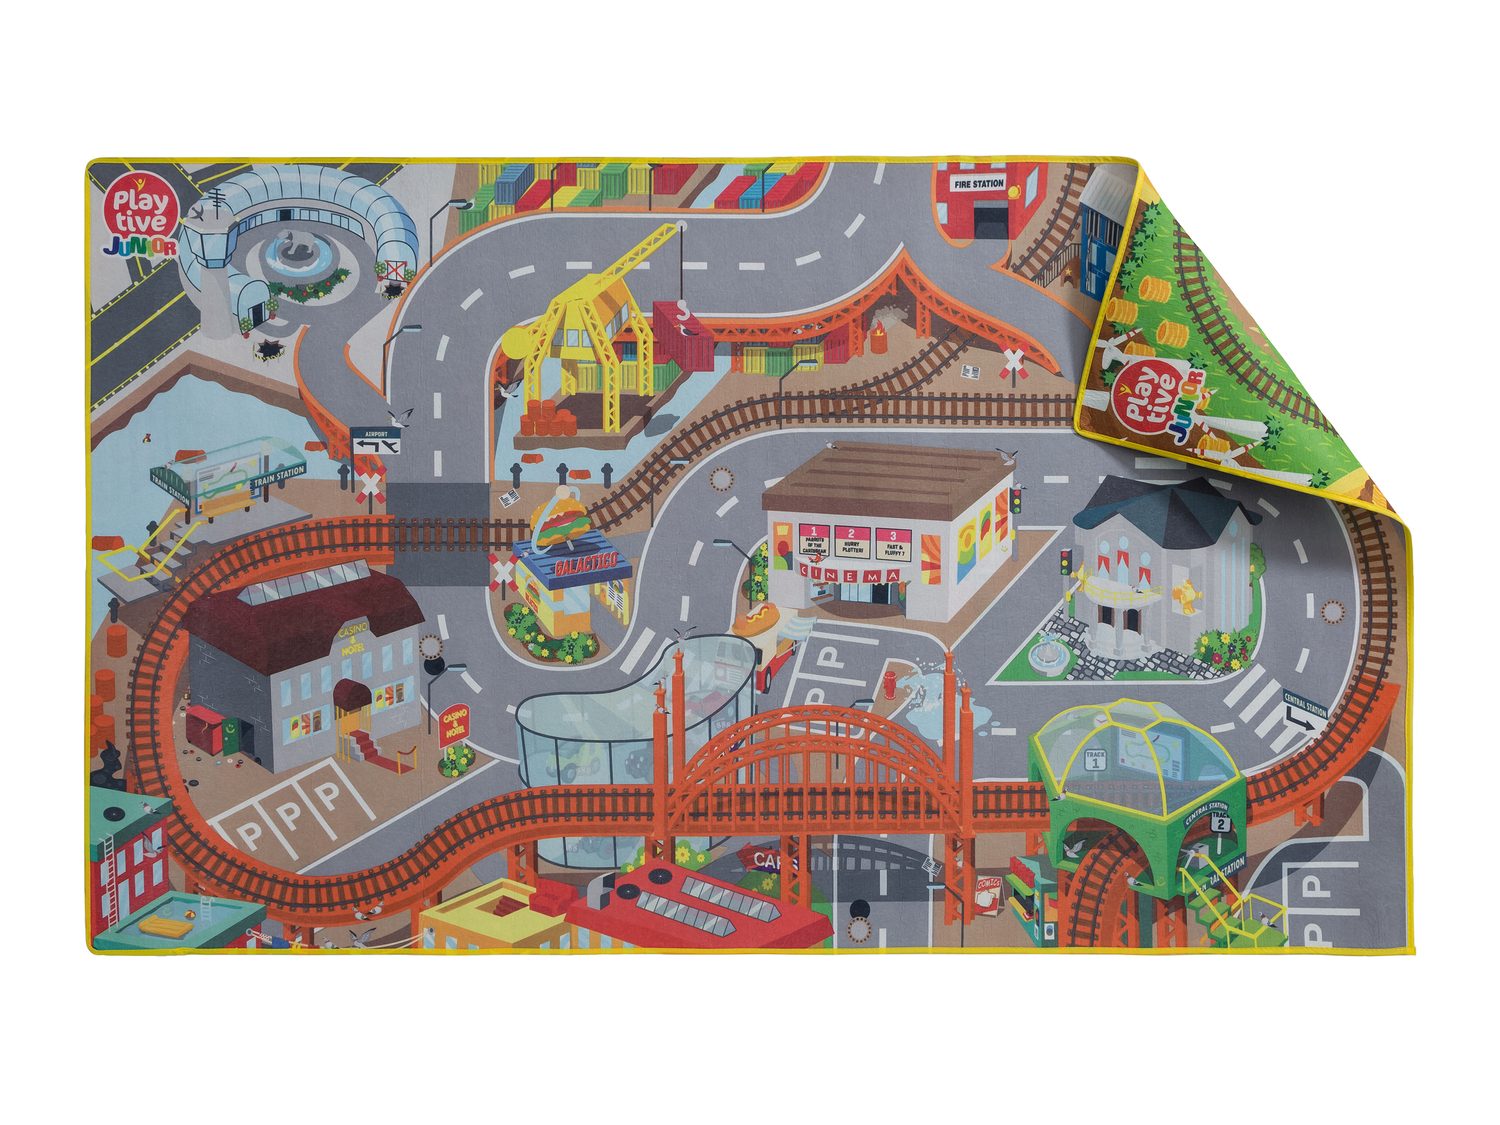 Dwustronny dywan do zabawy Playtive Junior, cena 39,99 PLN 
- ok. 150 x 90 cm (dł. ...